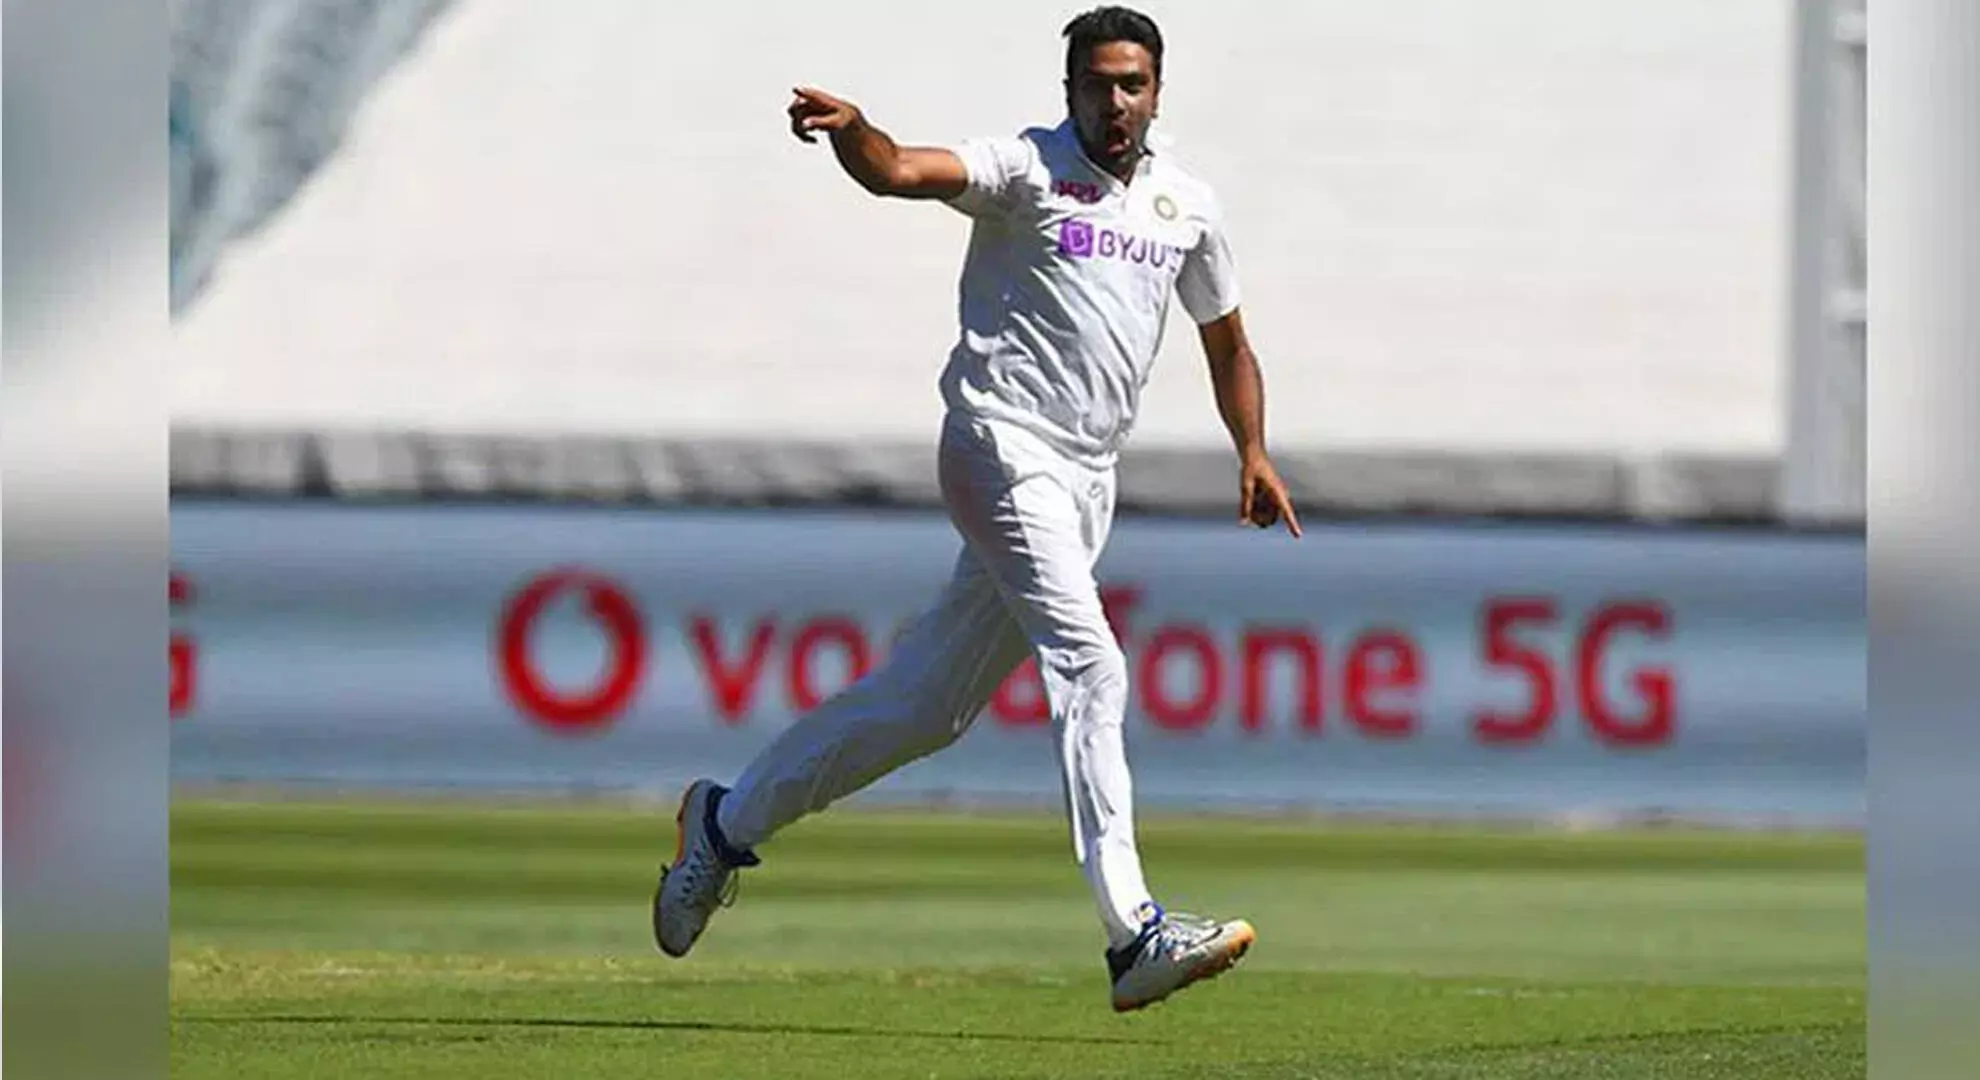 रविचंद्रन अश्विन ने भारत के लिए सर्वाधिक टेस्ट मैच में पांच विकेट लेने के कुंबले के रिकॉर्ड की बराबरी की